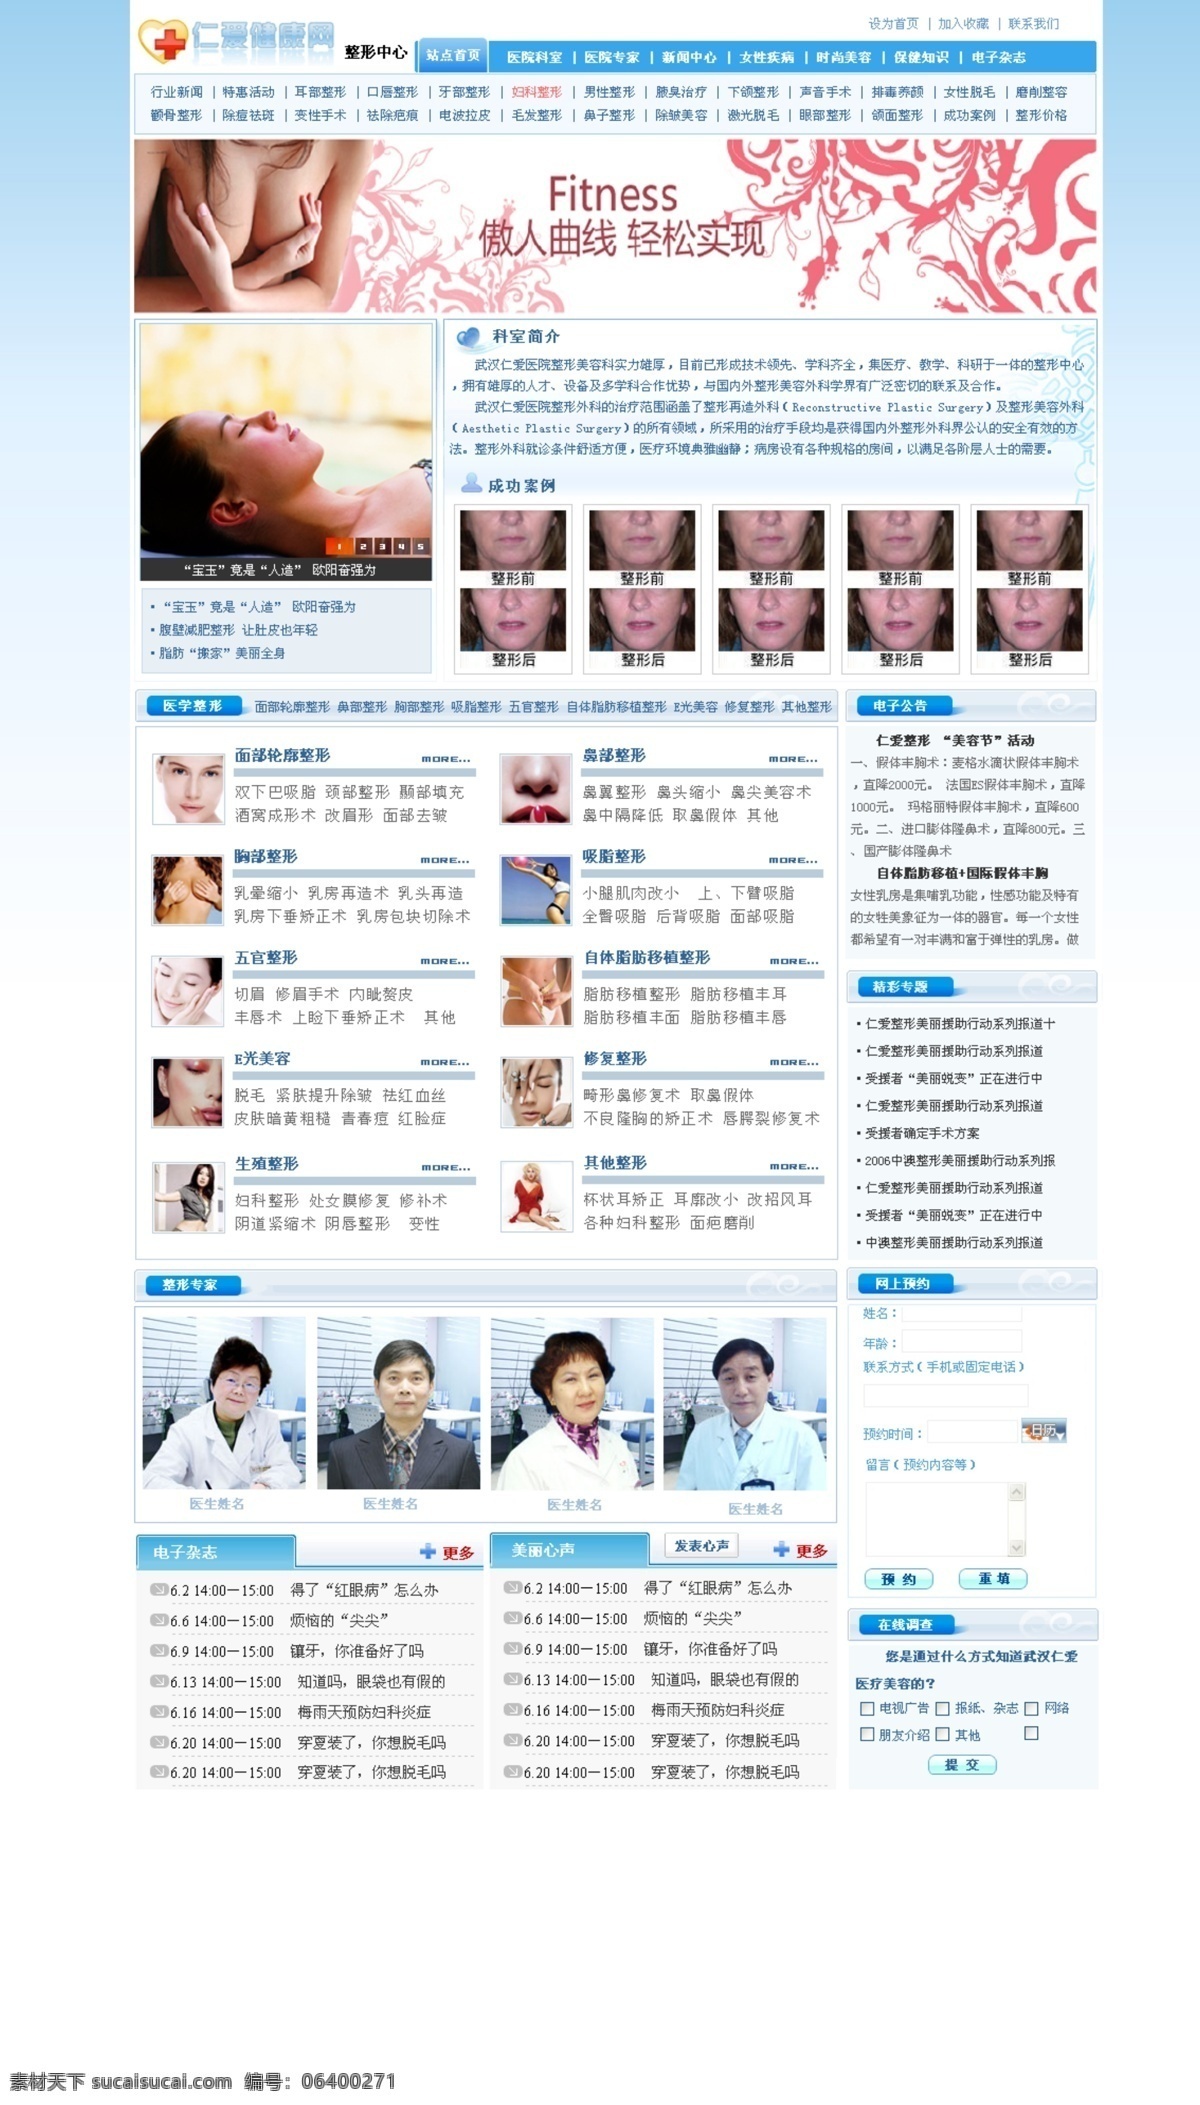 医院 蓝色 美容 网页模板 医院效果图 源文件 整容 整形 中文模版 psd源文件